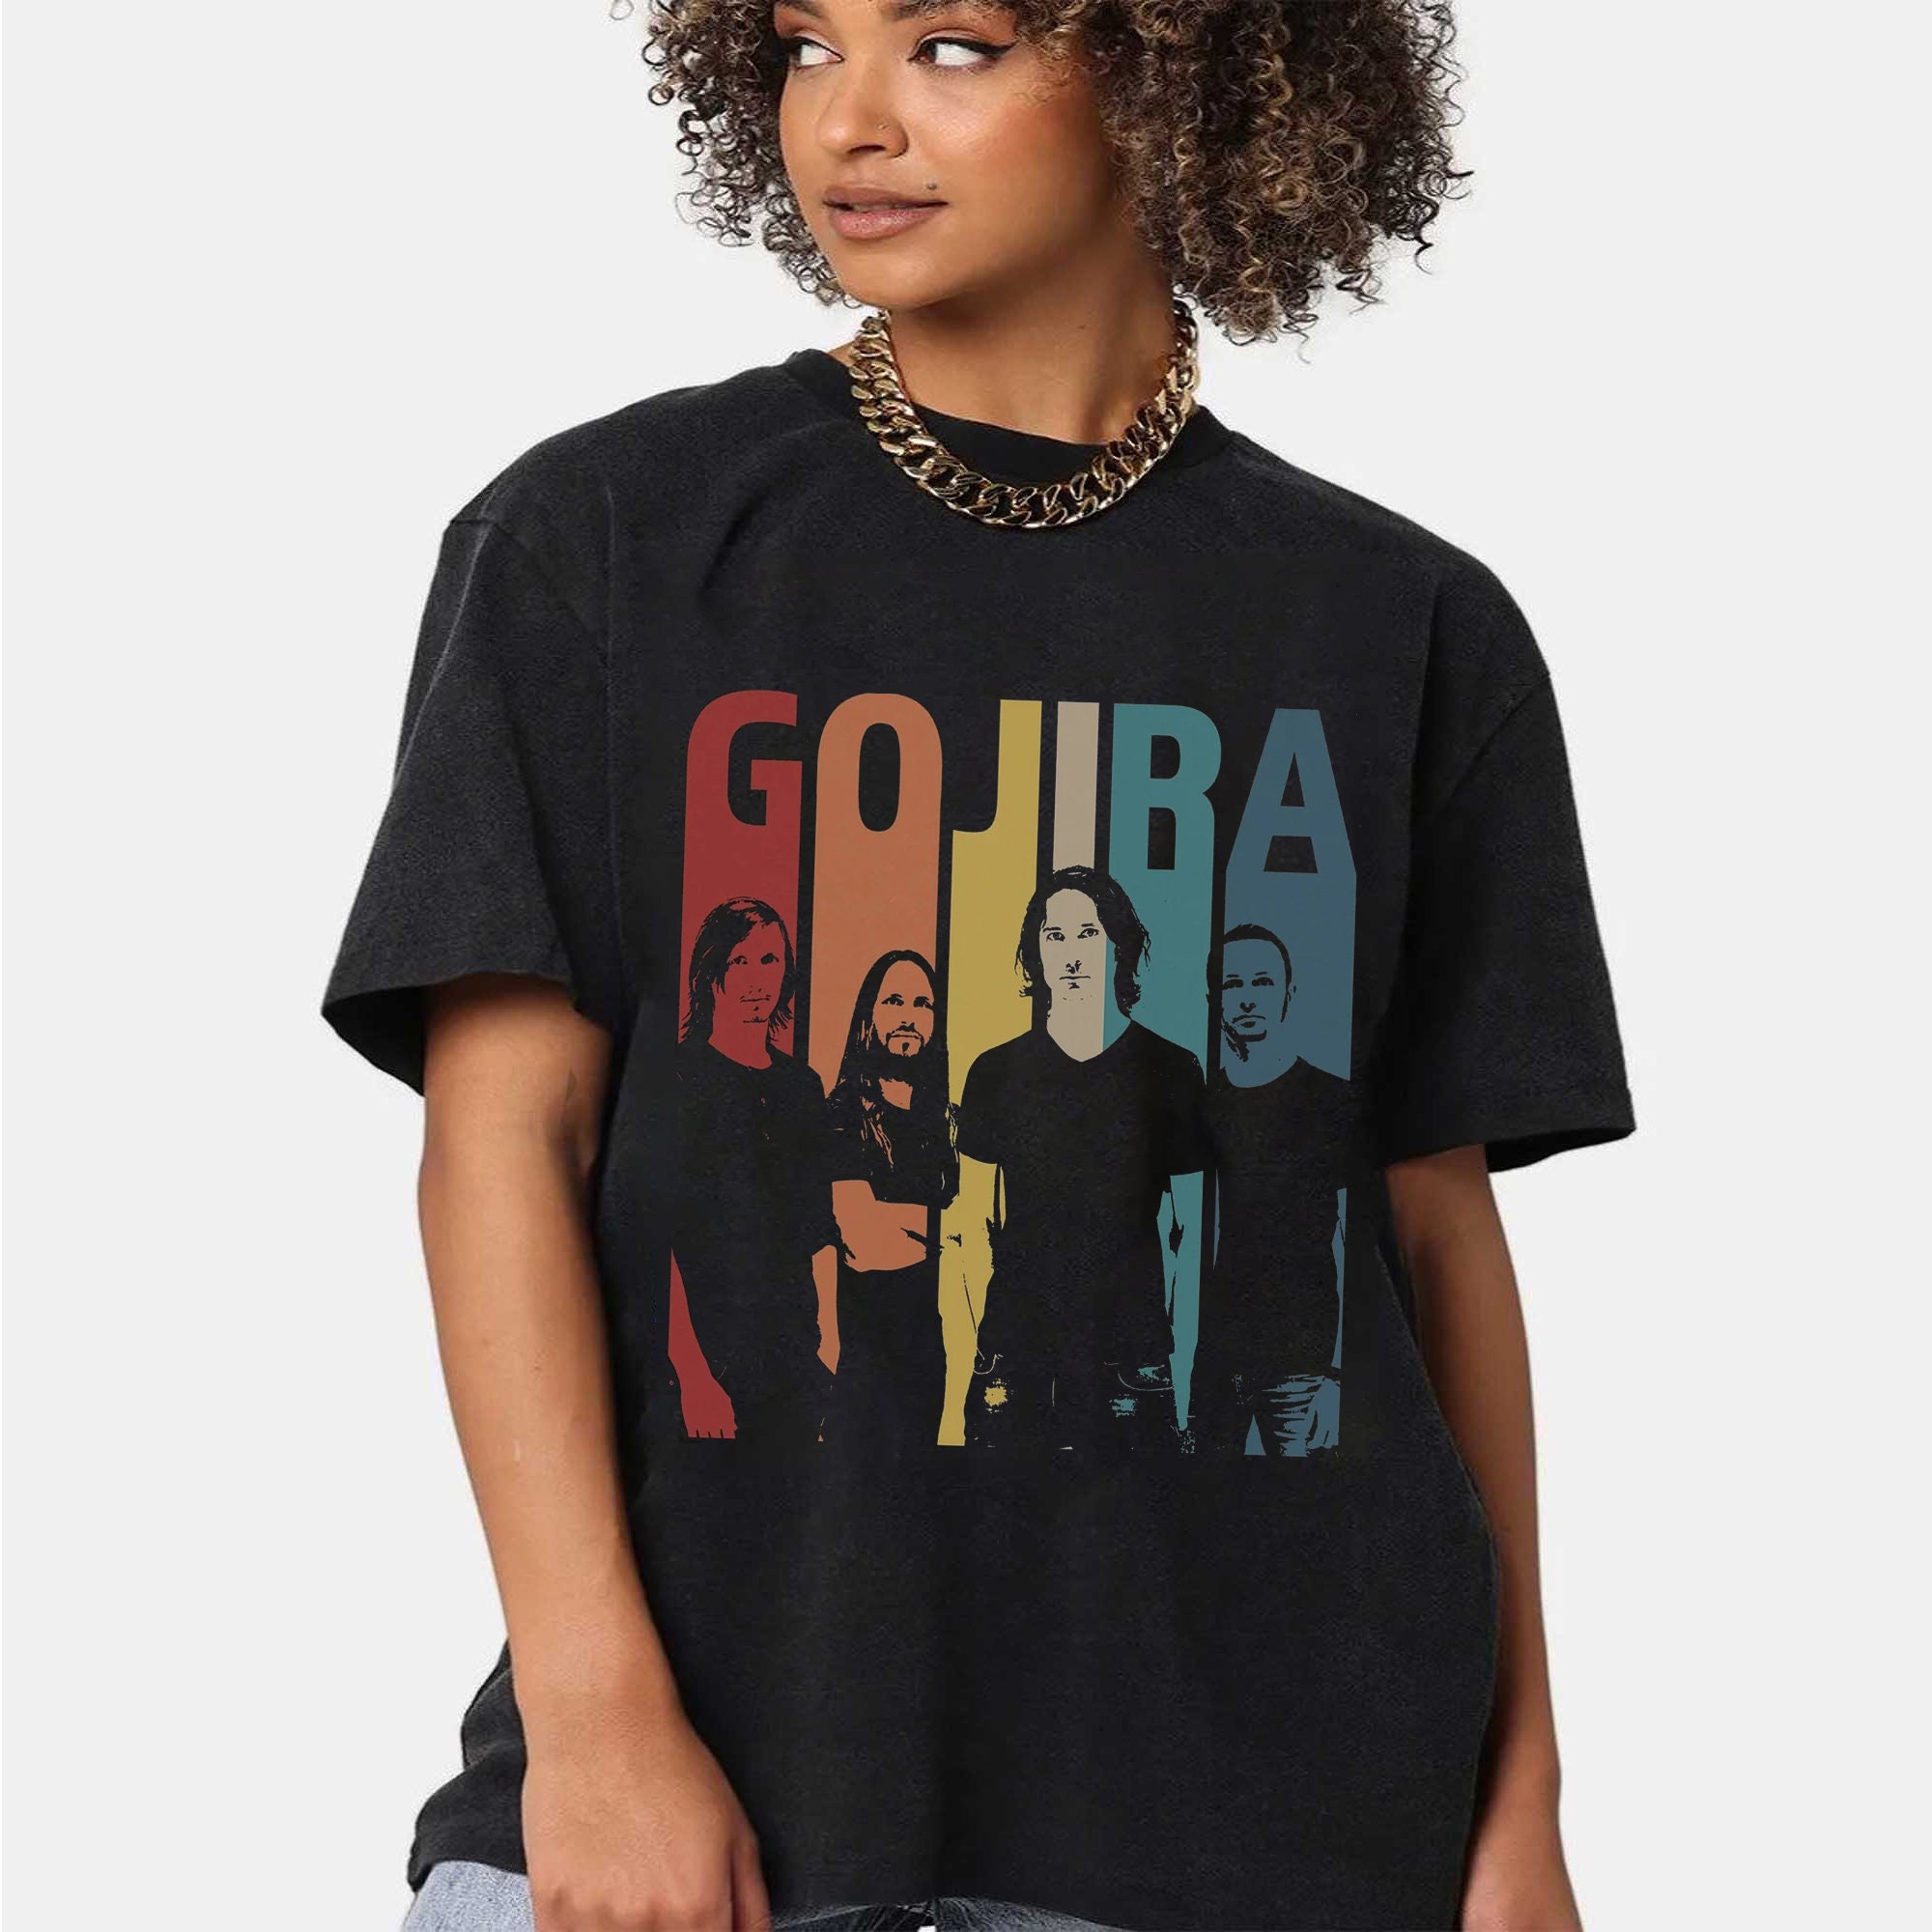 Gojira UK Tour 2023 Shirt, Gojira Band Shirt, Gojira Merch For Fan